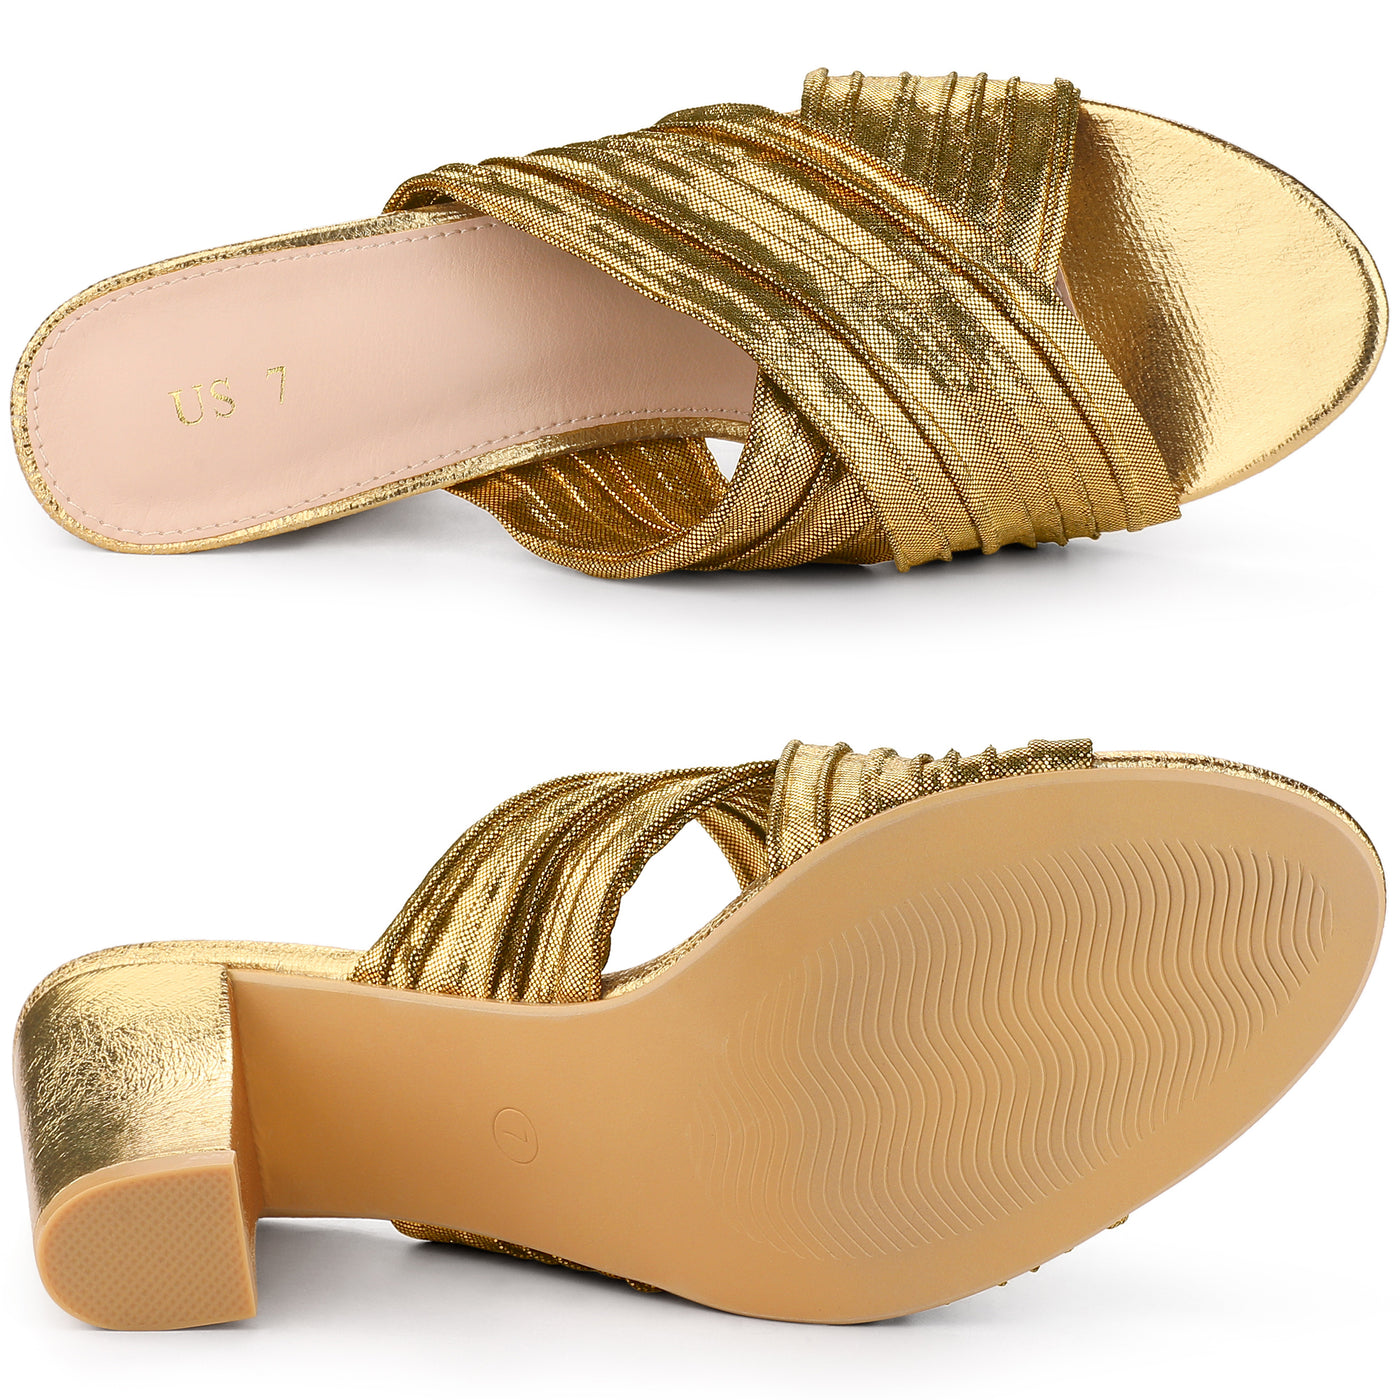 Allegra K Women's Slouches Slip on Block Heel Slide Sandals